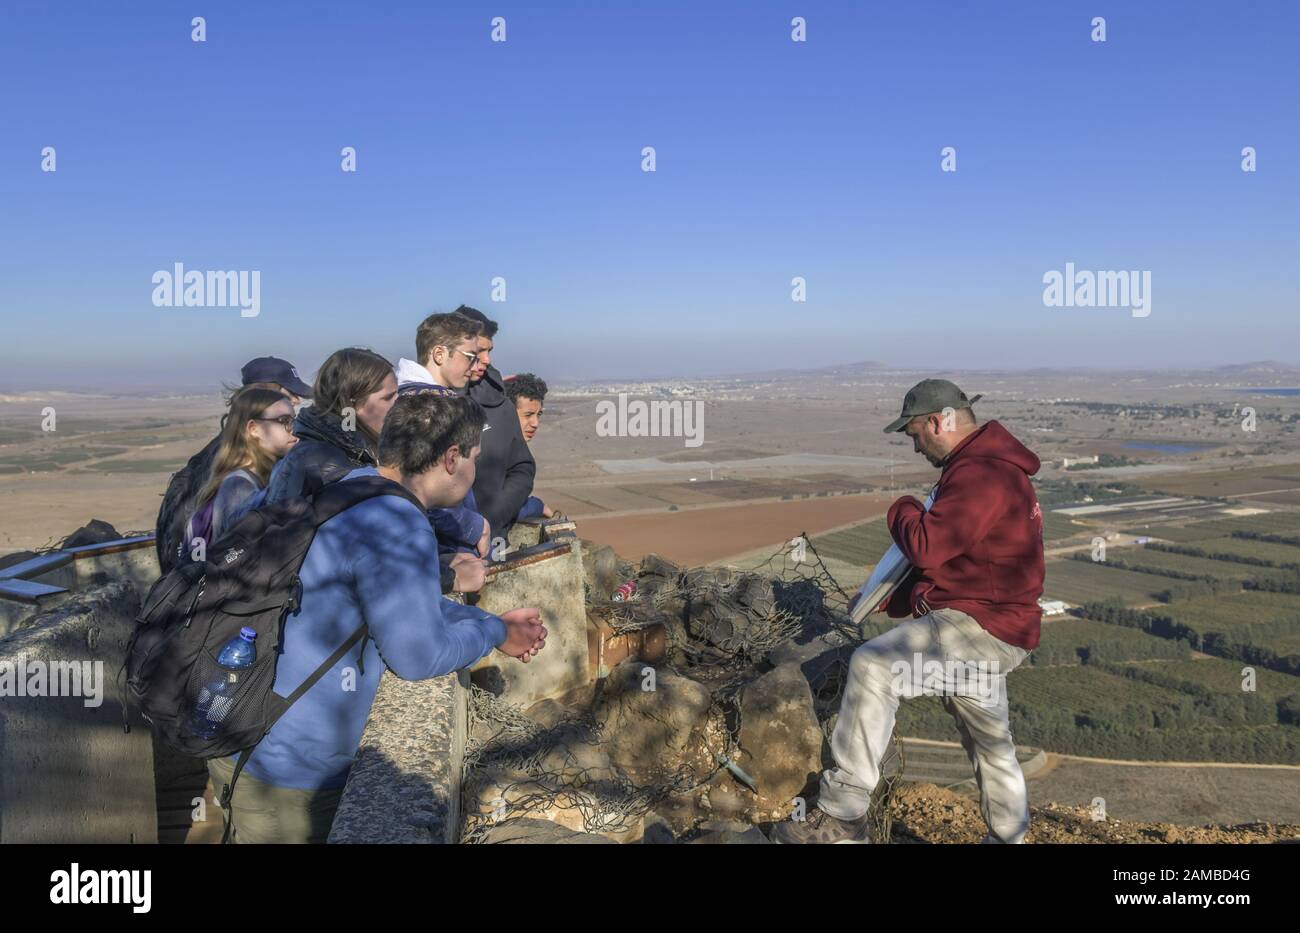 Besucher auf dem Aussichtspunkt Mount Bental, Golanhöhen, Israel Stock Photo